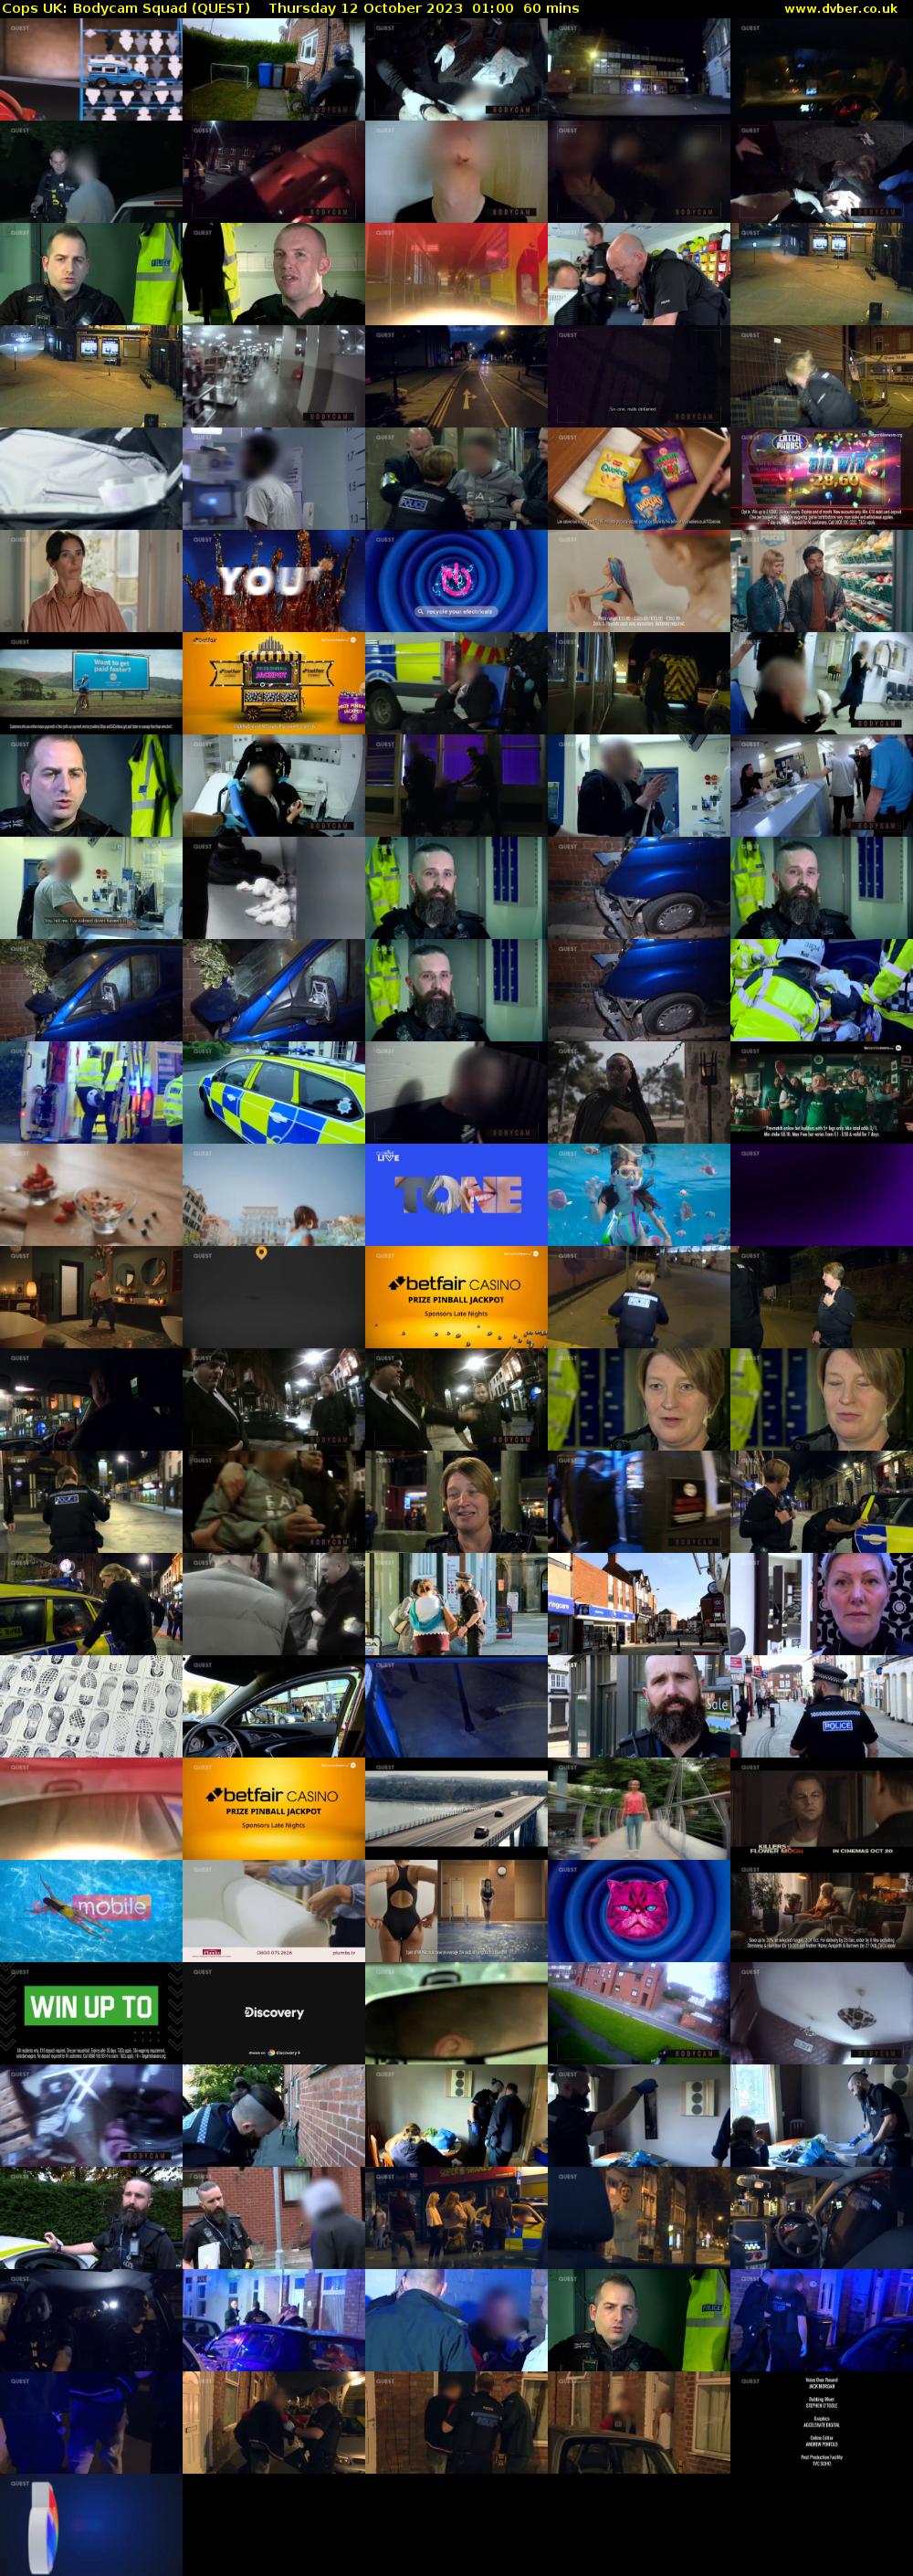 Cops UK: Bodycam Squad (QUEST) Thursday 12 October 2023 01:00 - 02:00